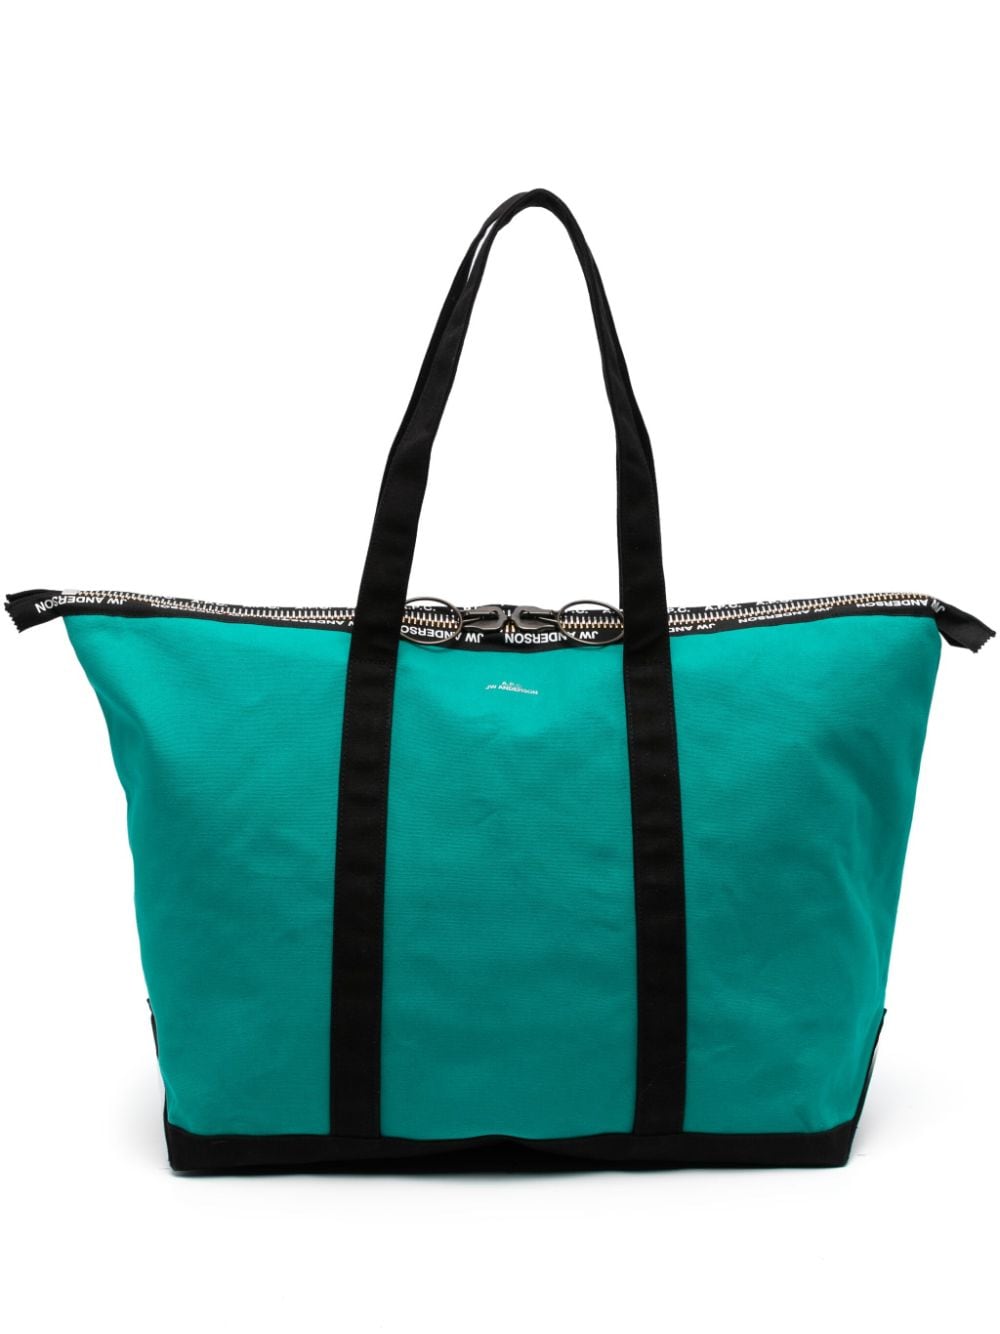 JW ANDERSON X APC Jade Green Cotton Tote Handbag for Men